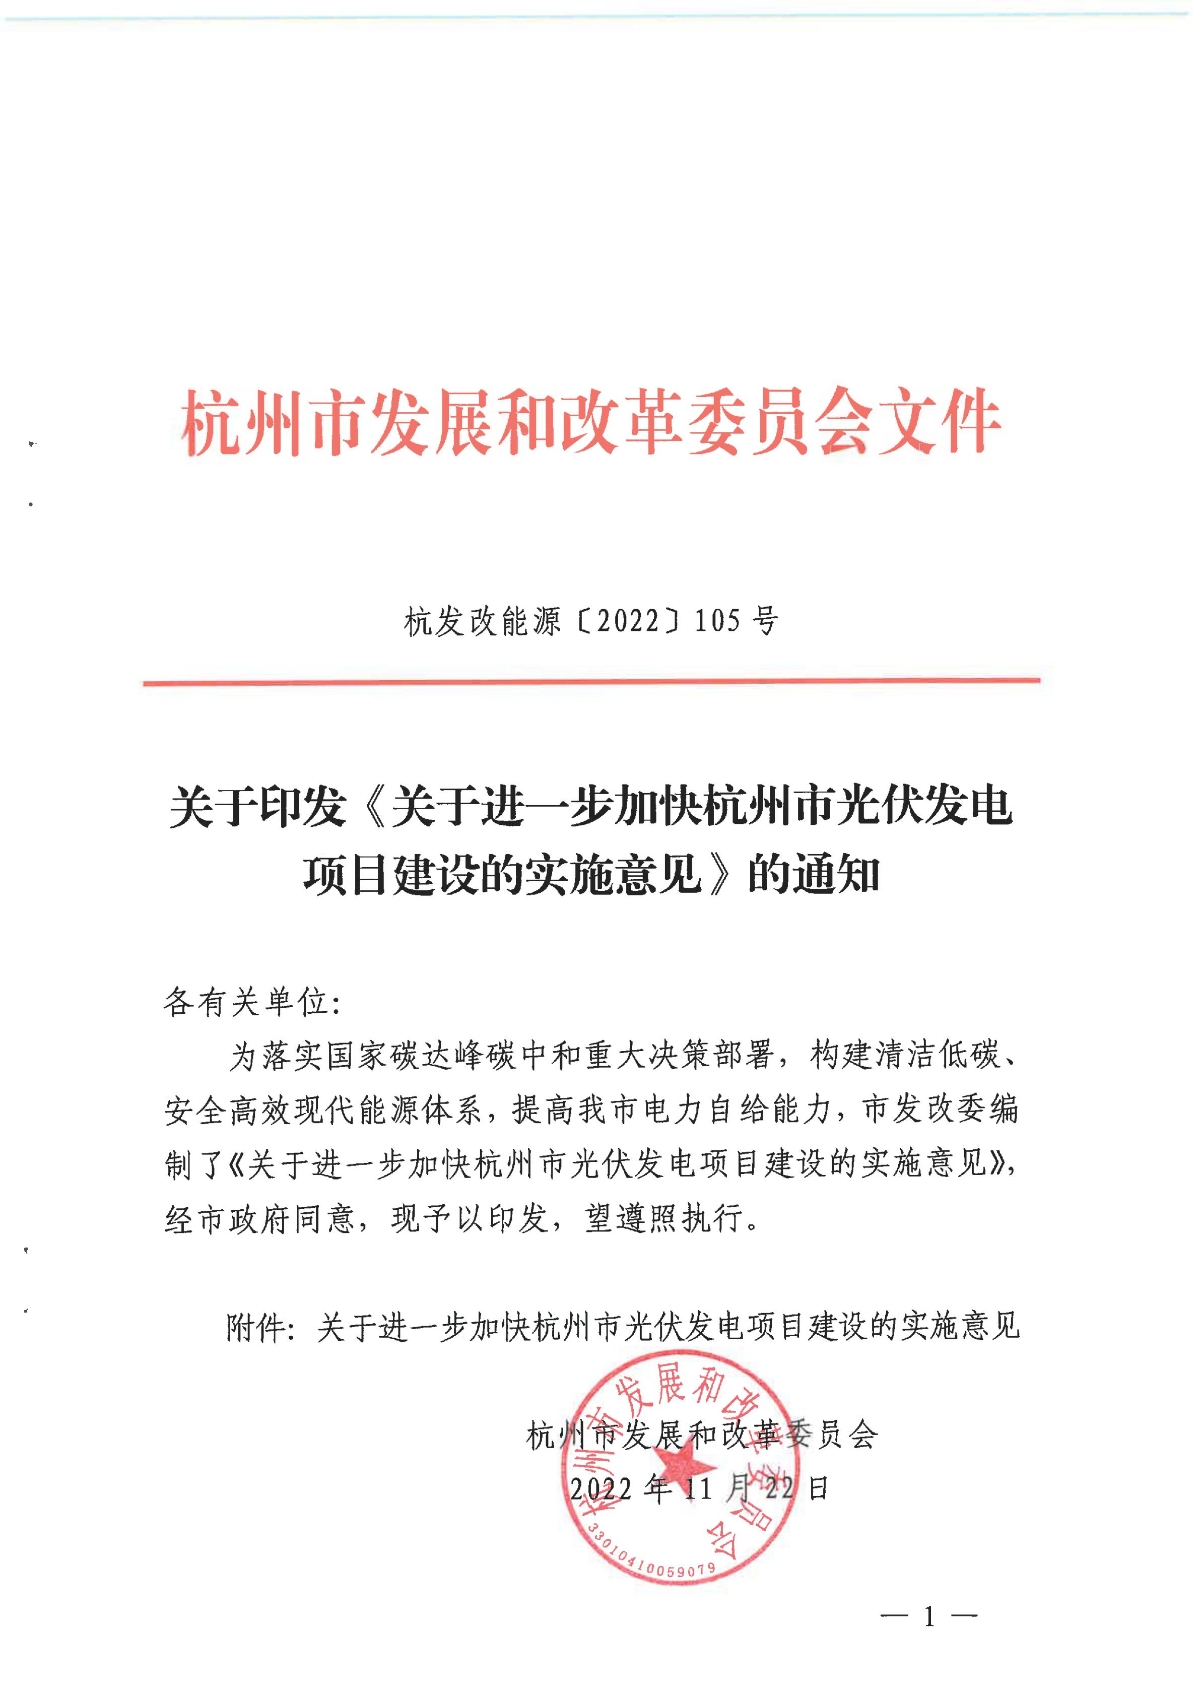 1128关于印发《关于进一步加快杭州市光伏发电项目建设的实施意见》的通知_00.jpg